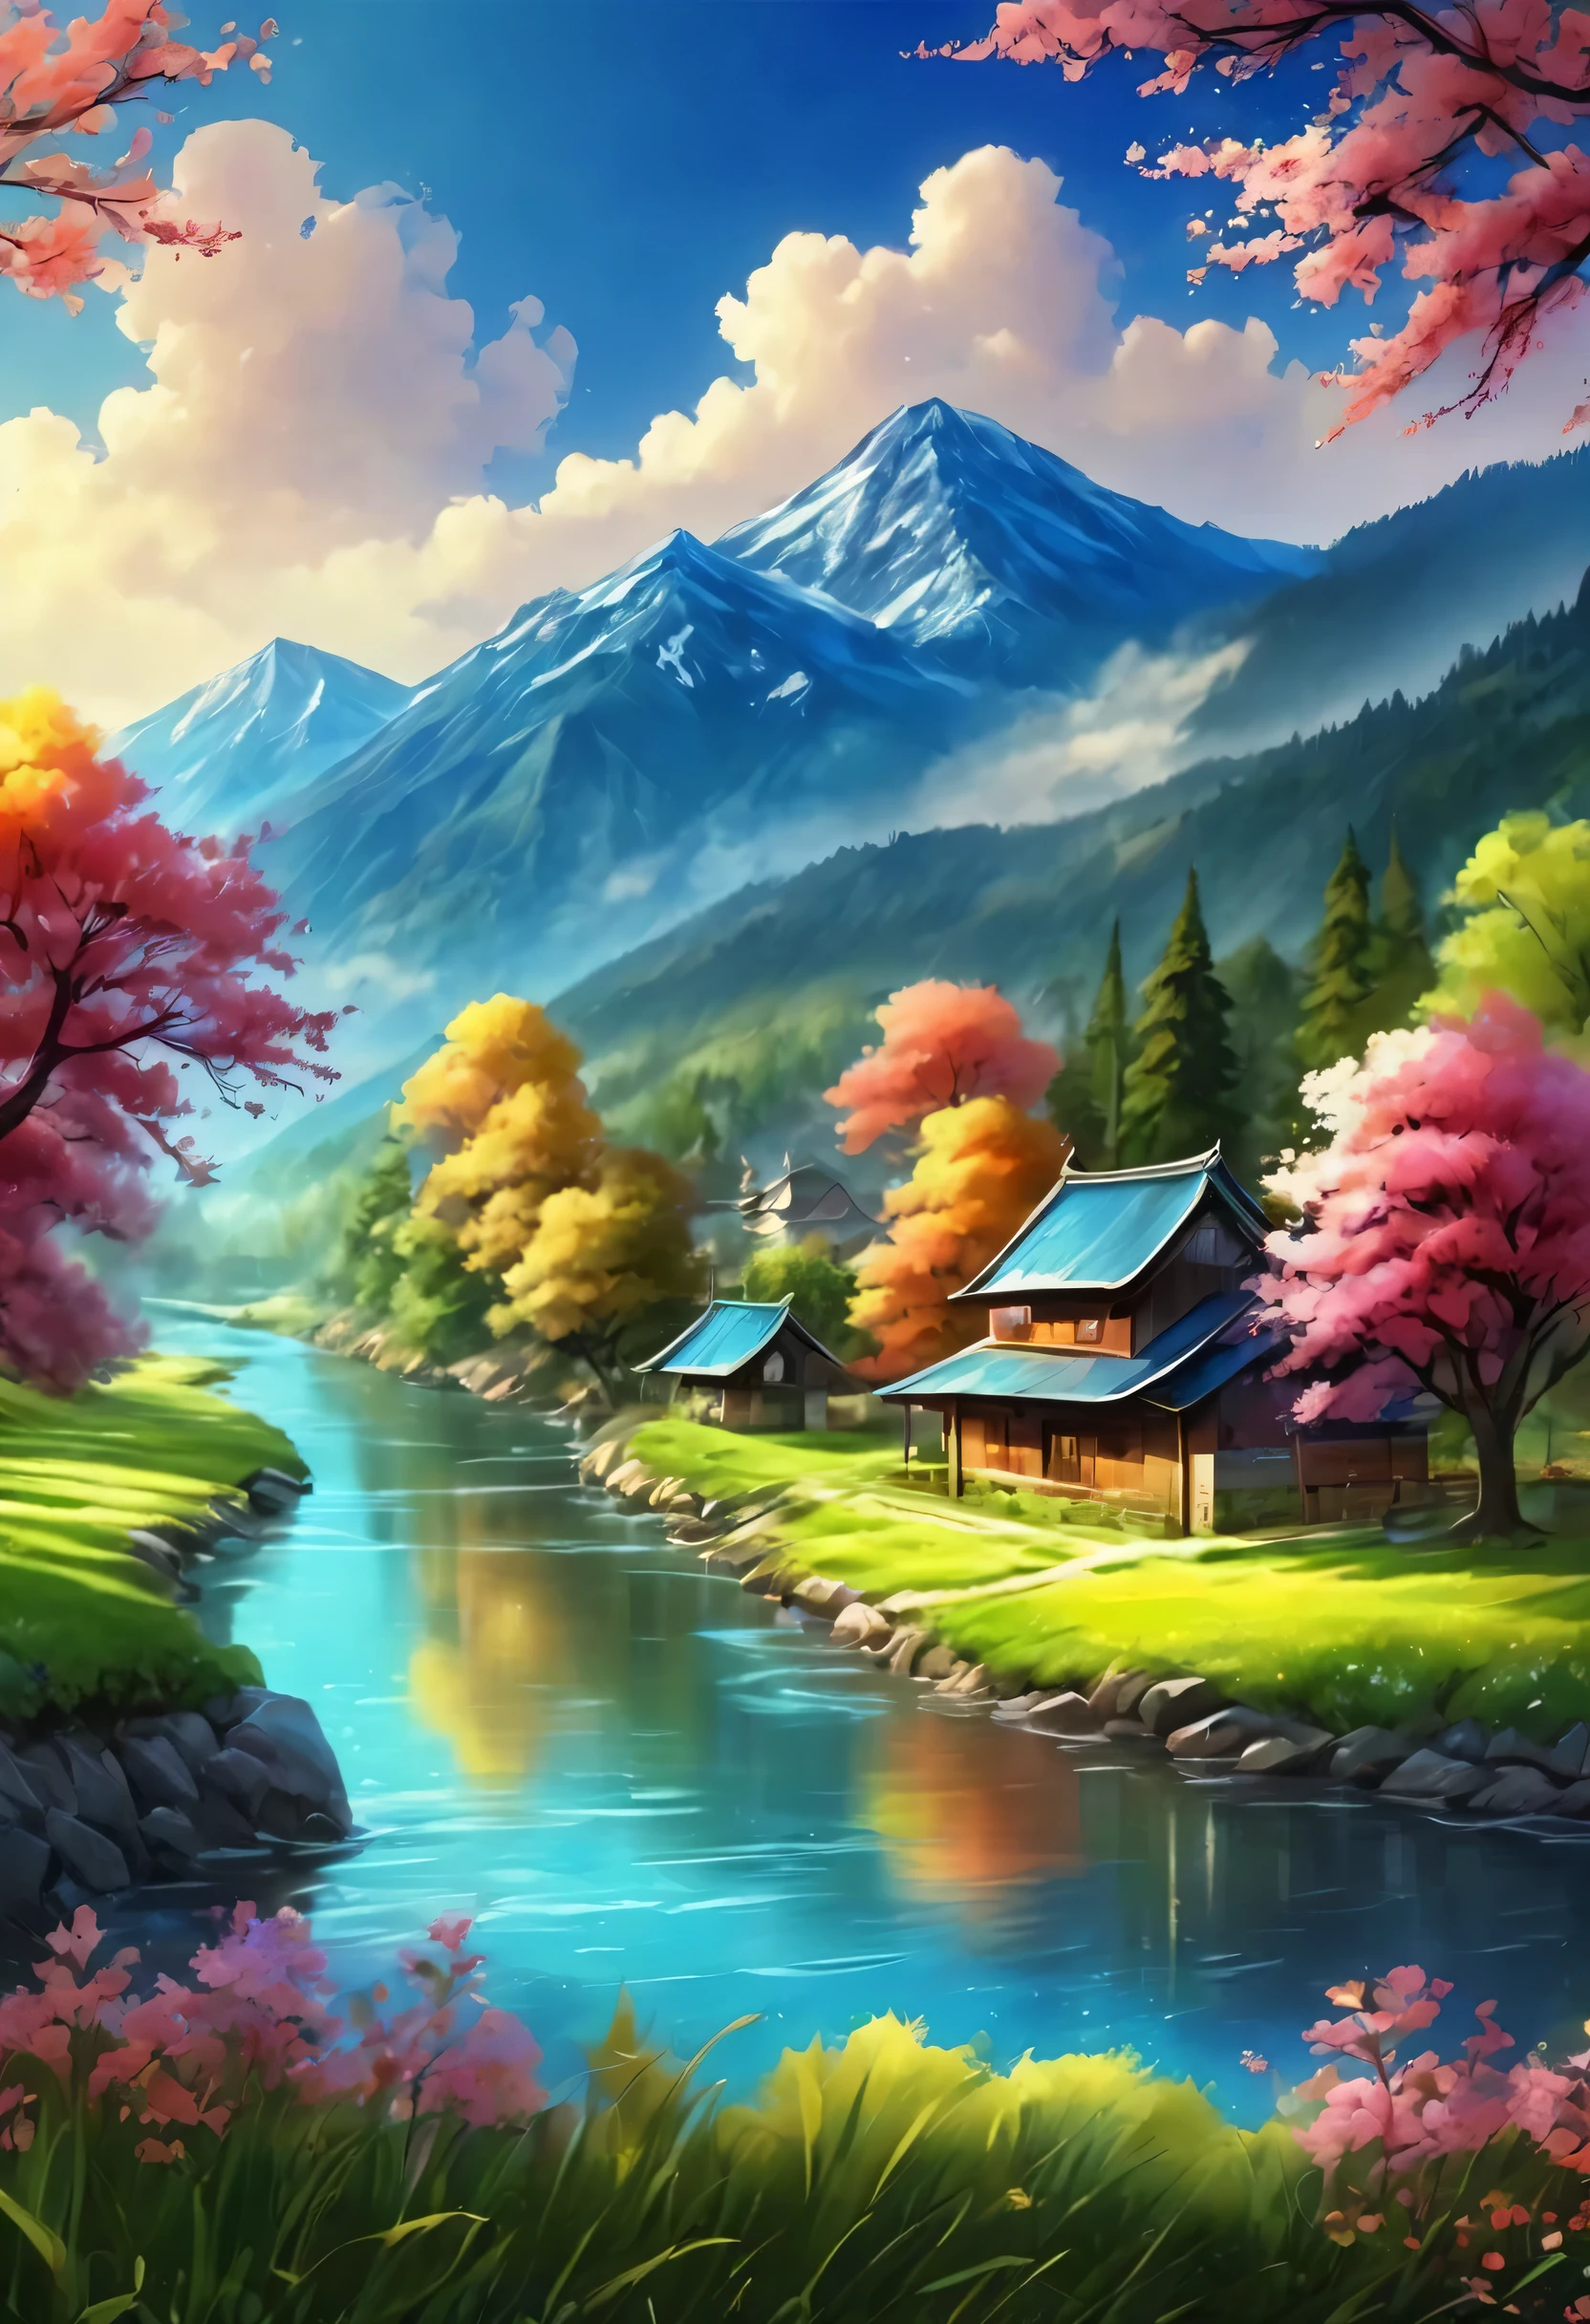 川と小さな村を描く, アニメの美しい平和なシーン, とても美しい景色, 風景画, ランドスケープアートの詳細, とても美しいデジタルアート, 自然の景観の美しさ, 美しいアート ウルトラHD 4K, とても美しい写真, 美しい自然, 風景の壁紙, really 美しい自然, 美しいデジタルアート, 美しい背景, 桜, アニメスタイル